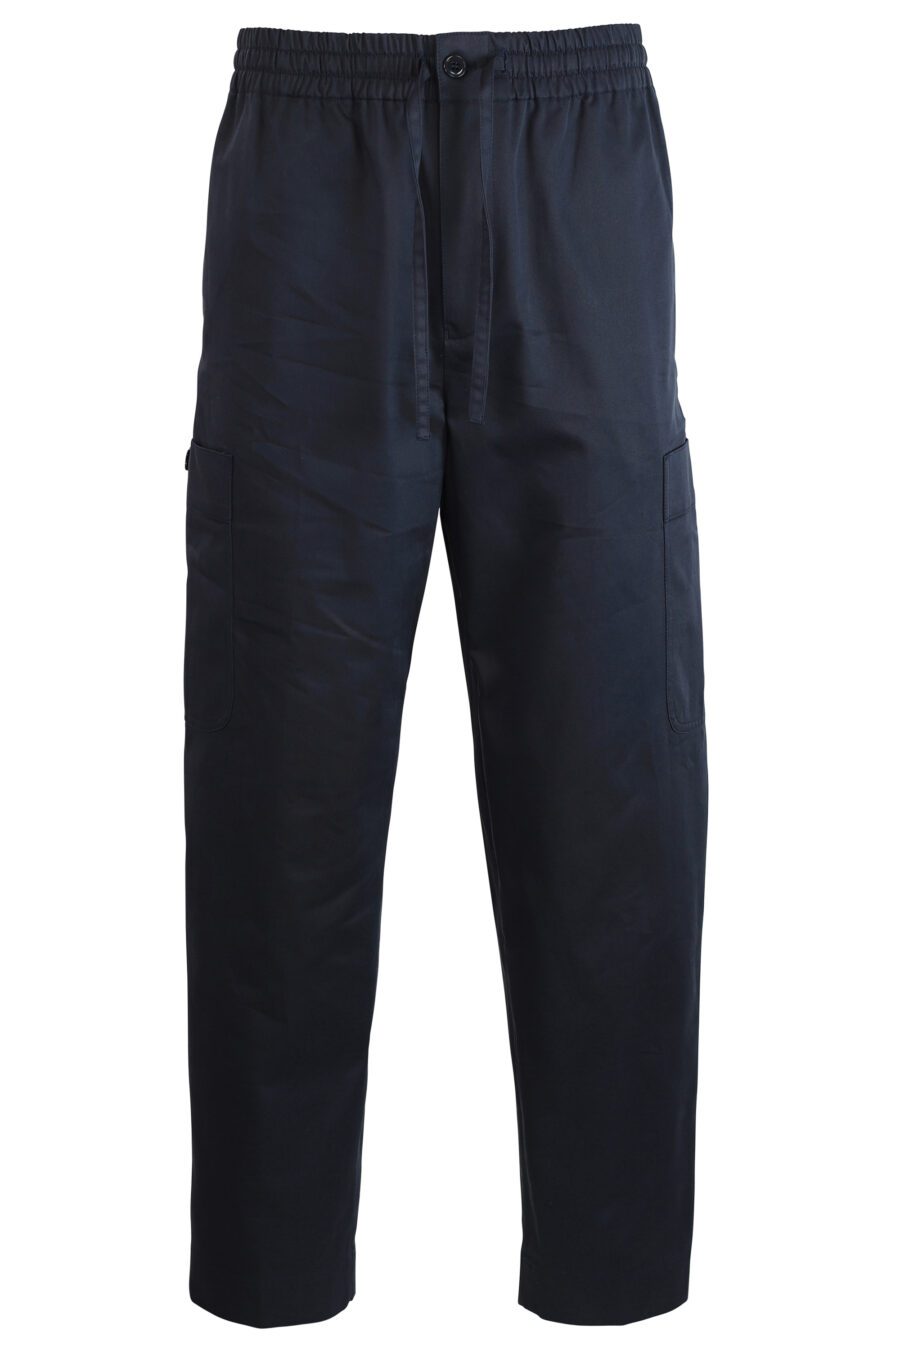 Pantalón azul con bolsillo laterales y logo - 3612230409323